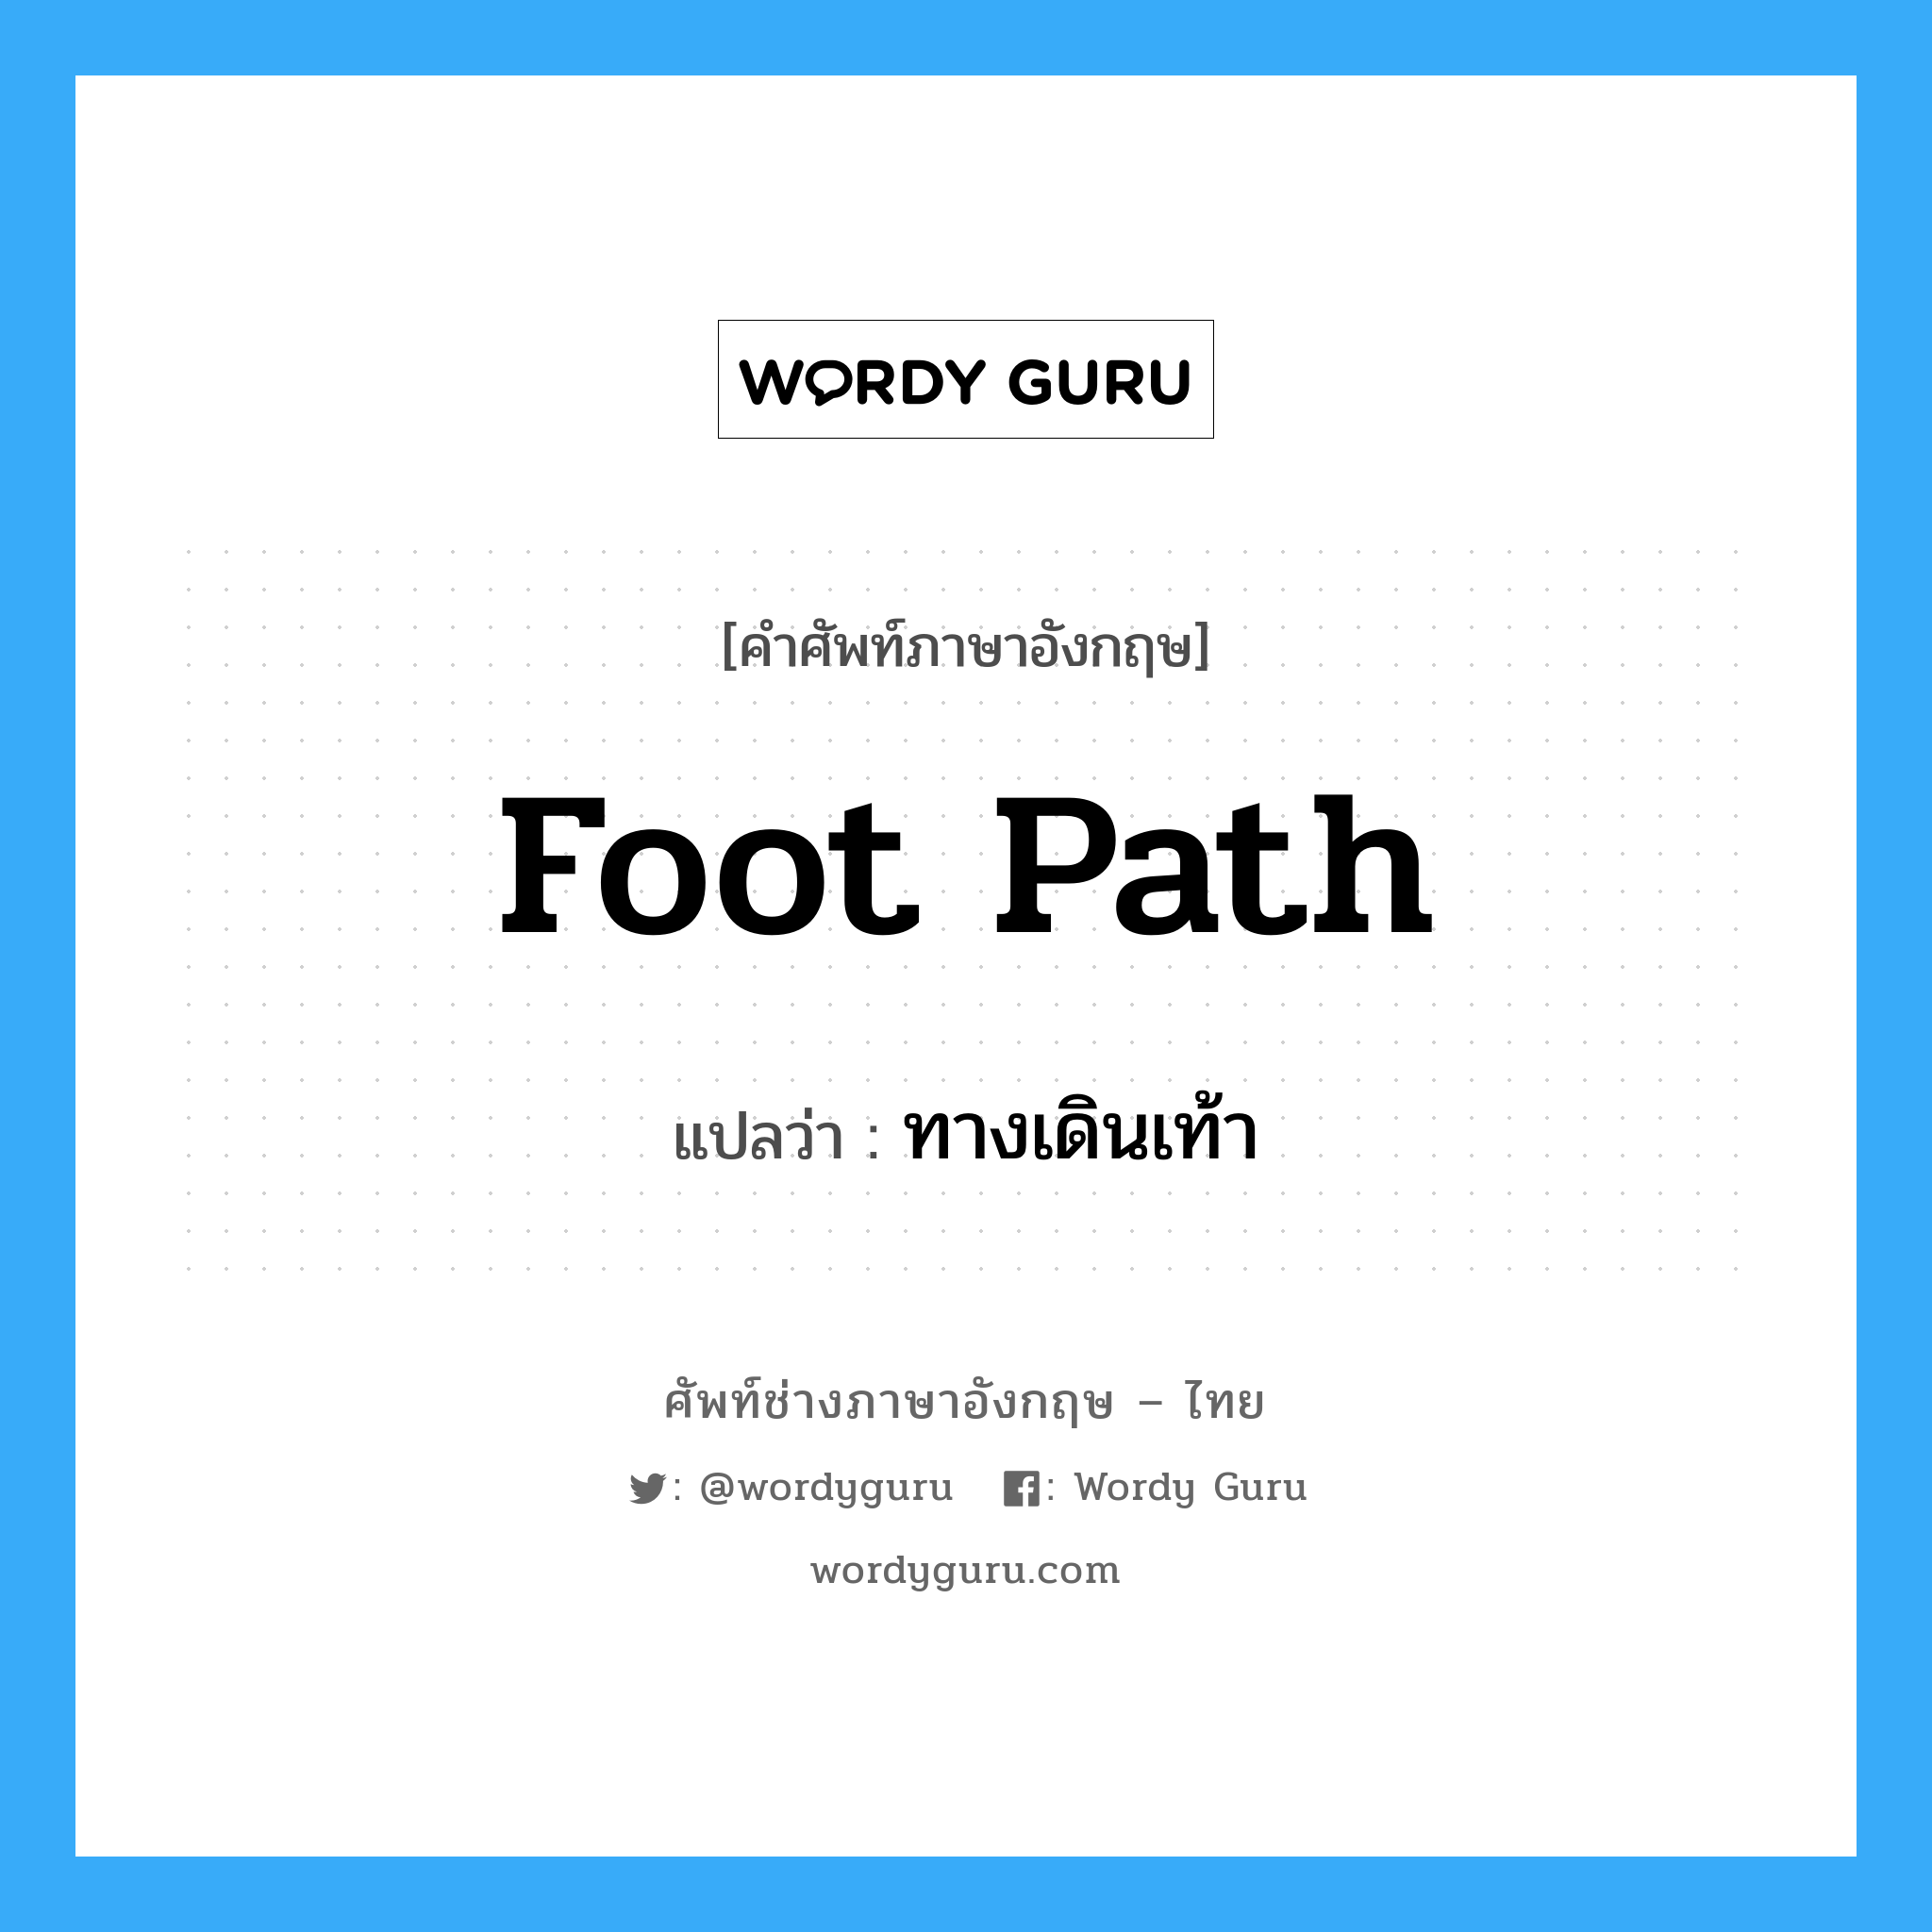 ทางเดินเท้า ภาษาอังกฤษ?, คำศัพท์ช่างภาษาอังกฤษ - ไทย ทางเดินเท้า คำศัพท์ภาษาอังกฤษ ทางเดินเท้า แปลว่า foot path